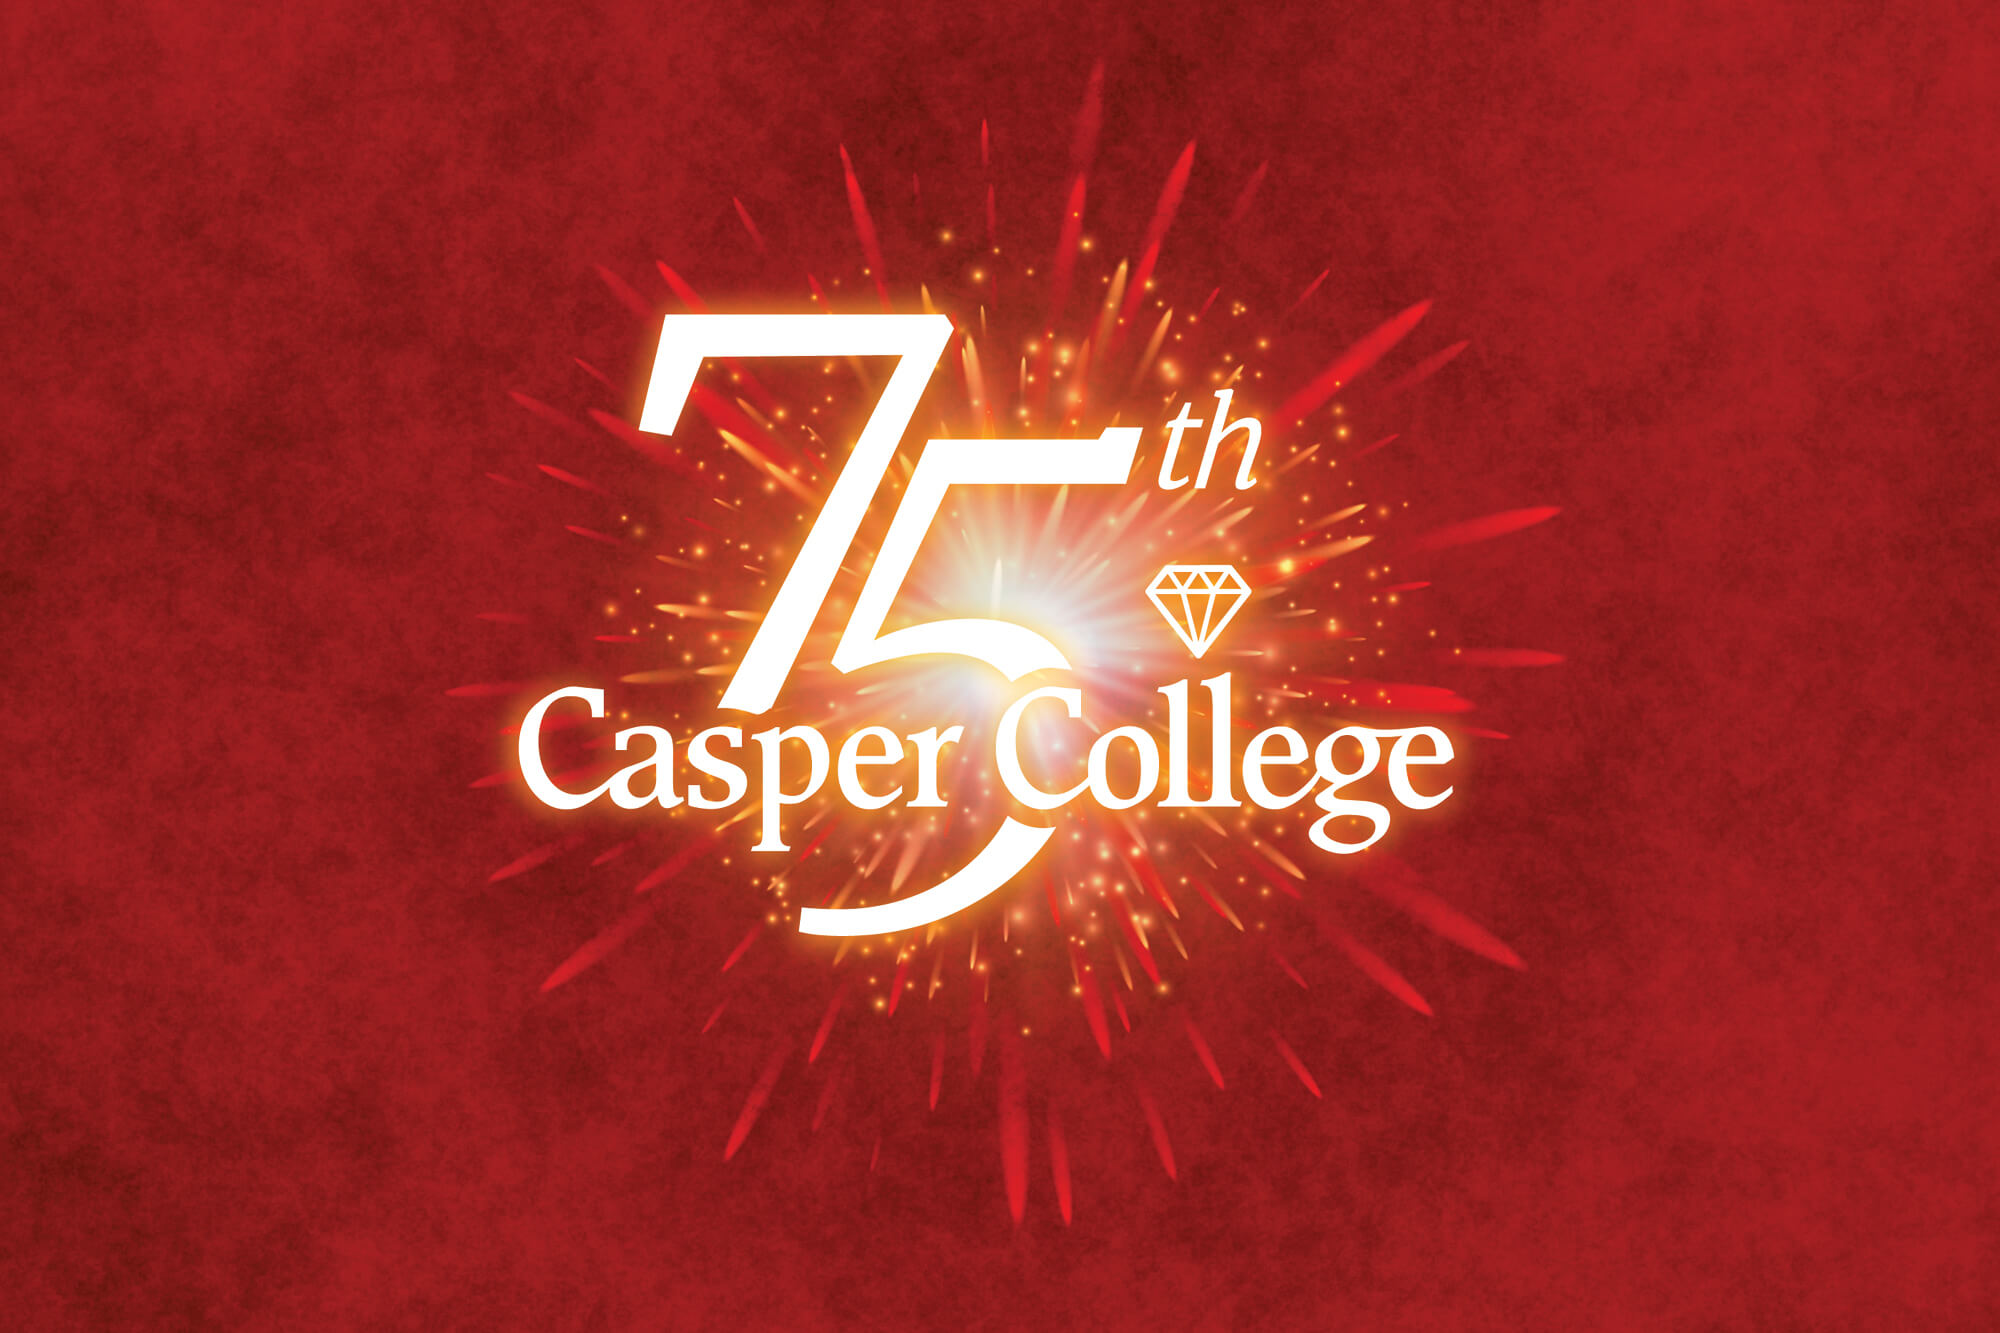 Casper College 75th Anniversary logo.